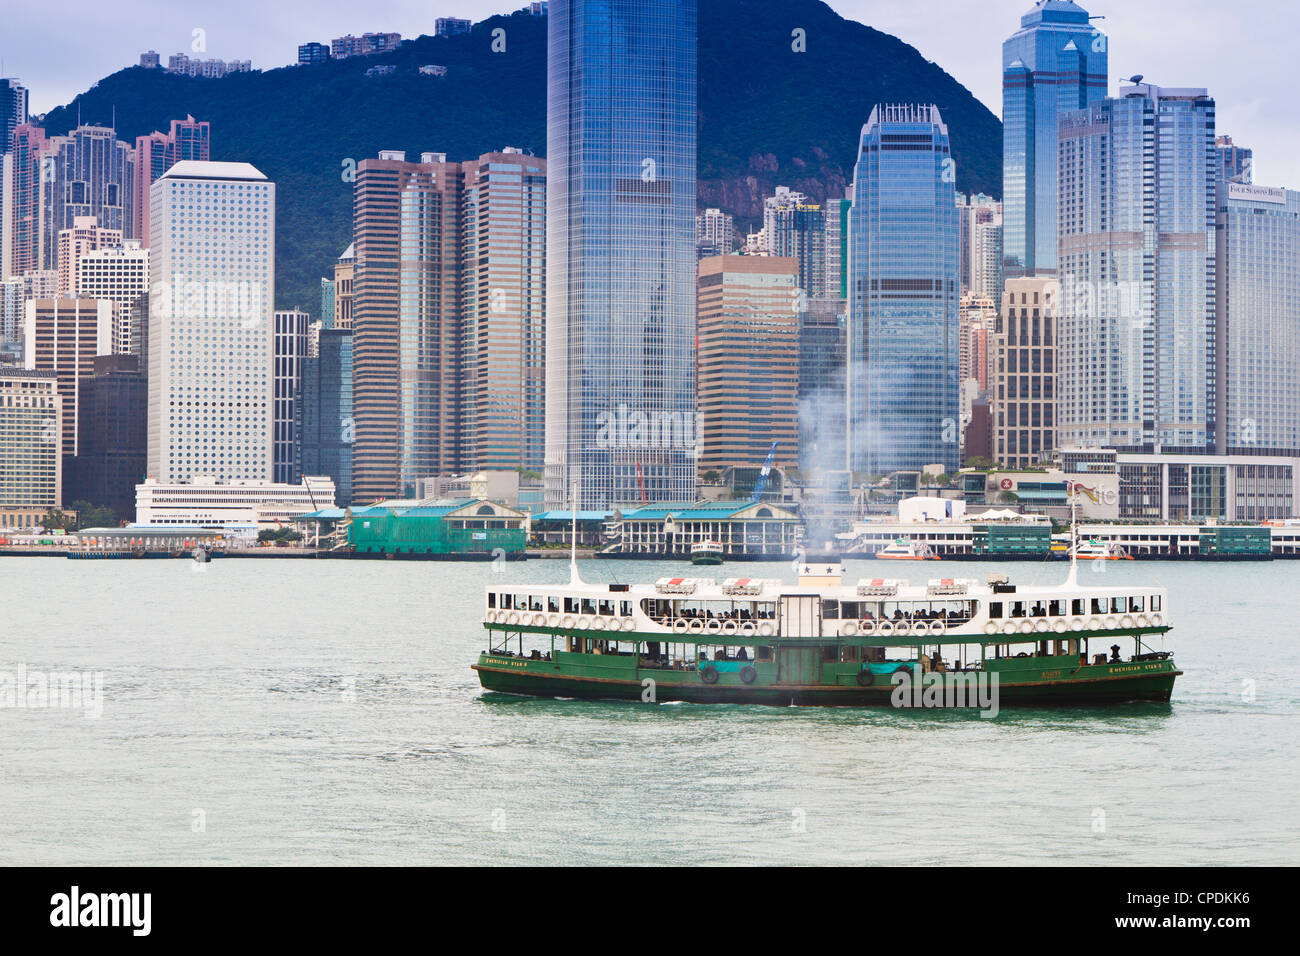 Star ferry traverse le port de Victoria avec l'île de Hong Kong skyline derrière, Hong Kong, Chine, Asie Banque D'Images